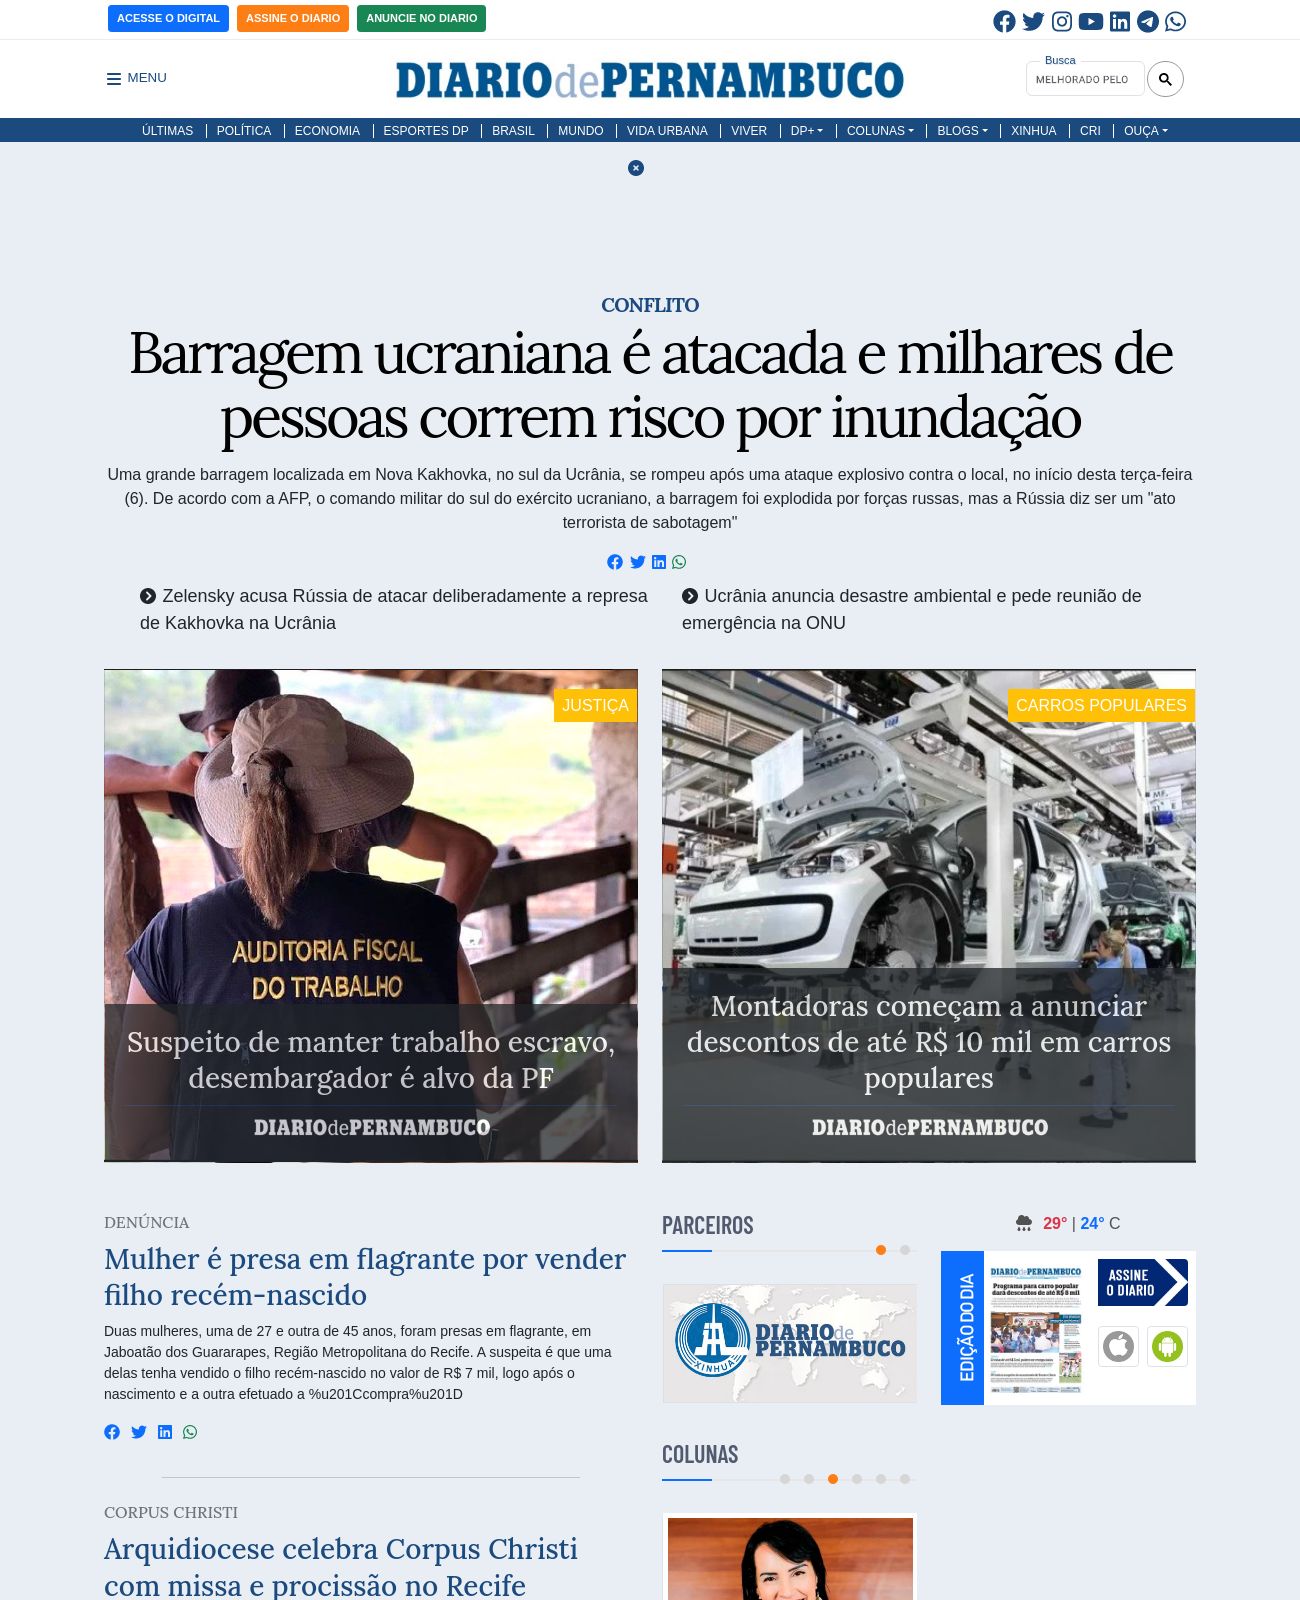 Diario de Pernambuco at 2023-06-06 19:47:39-03:00 local time